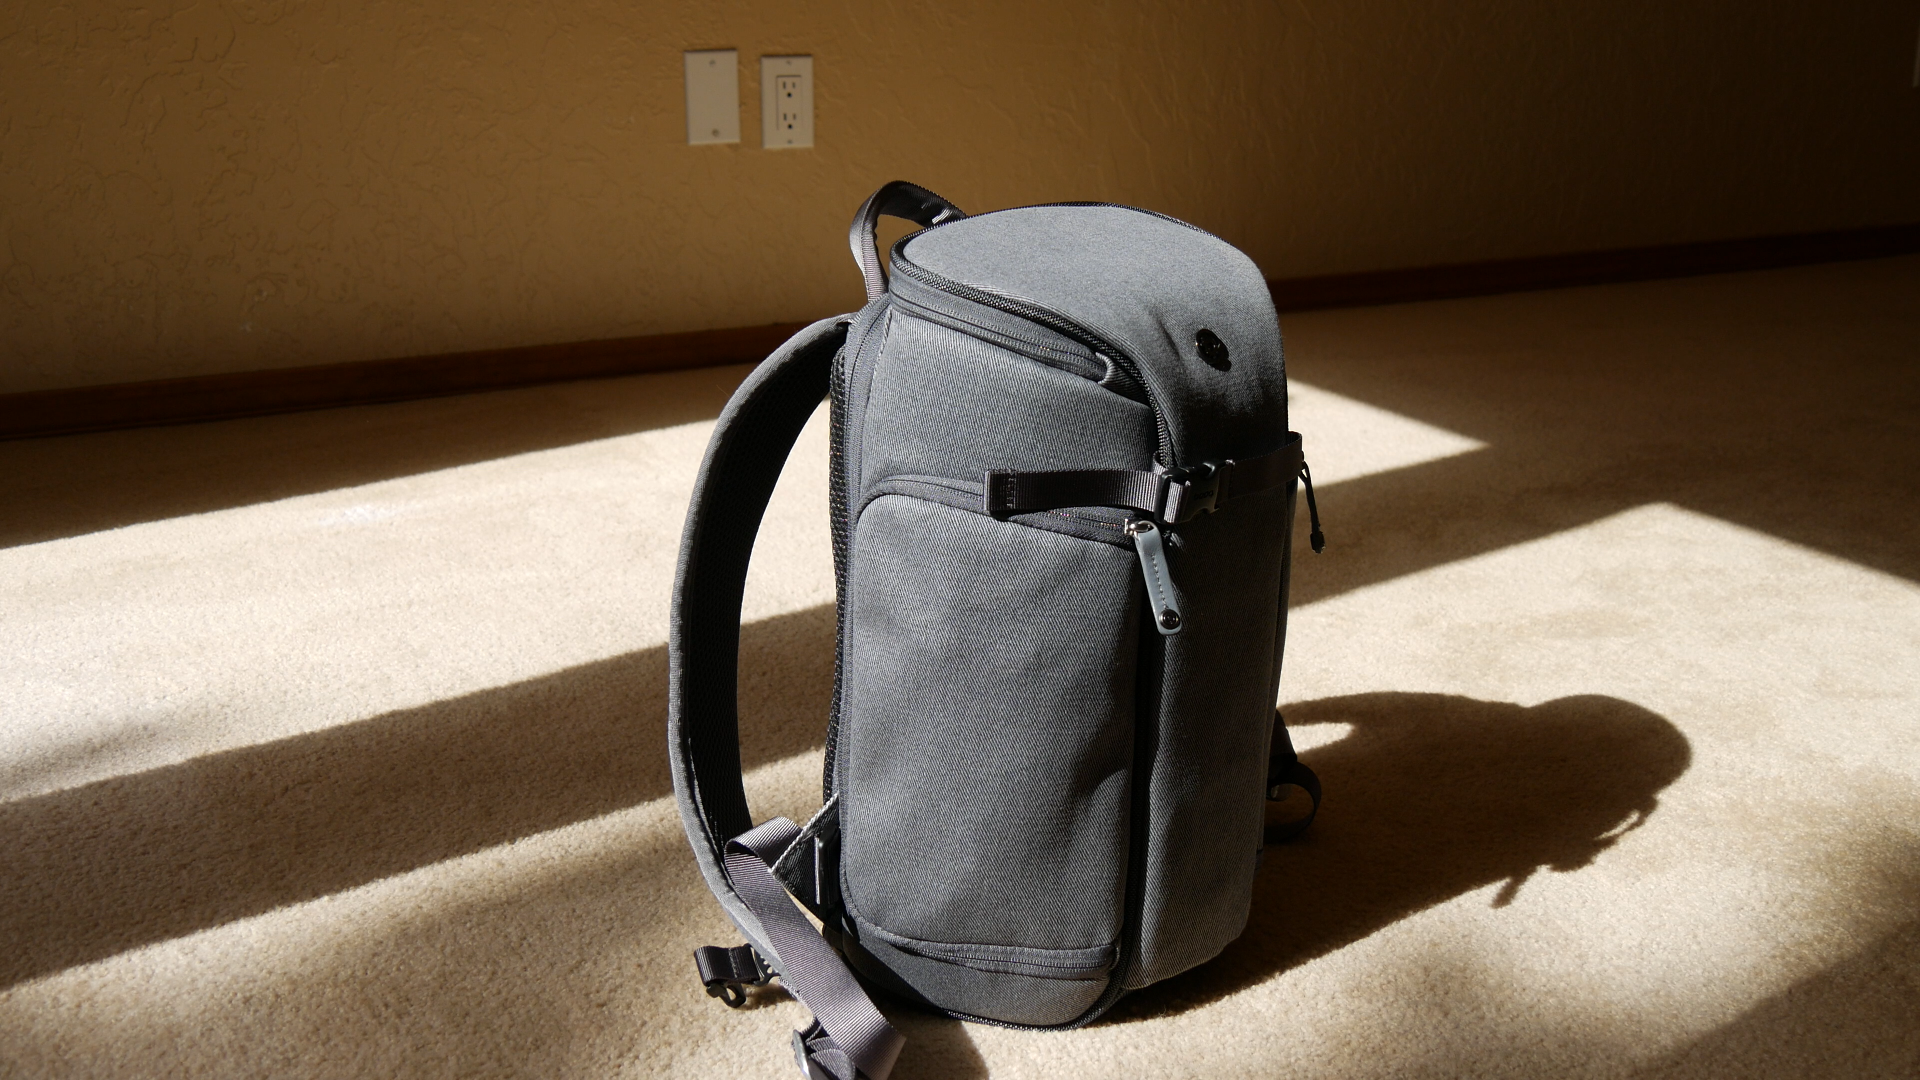 booq slimpack review camera backpack slim02